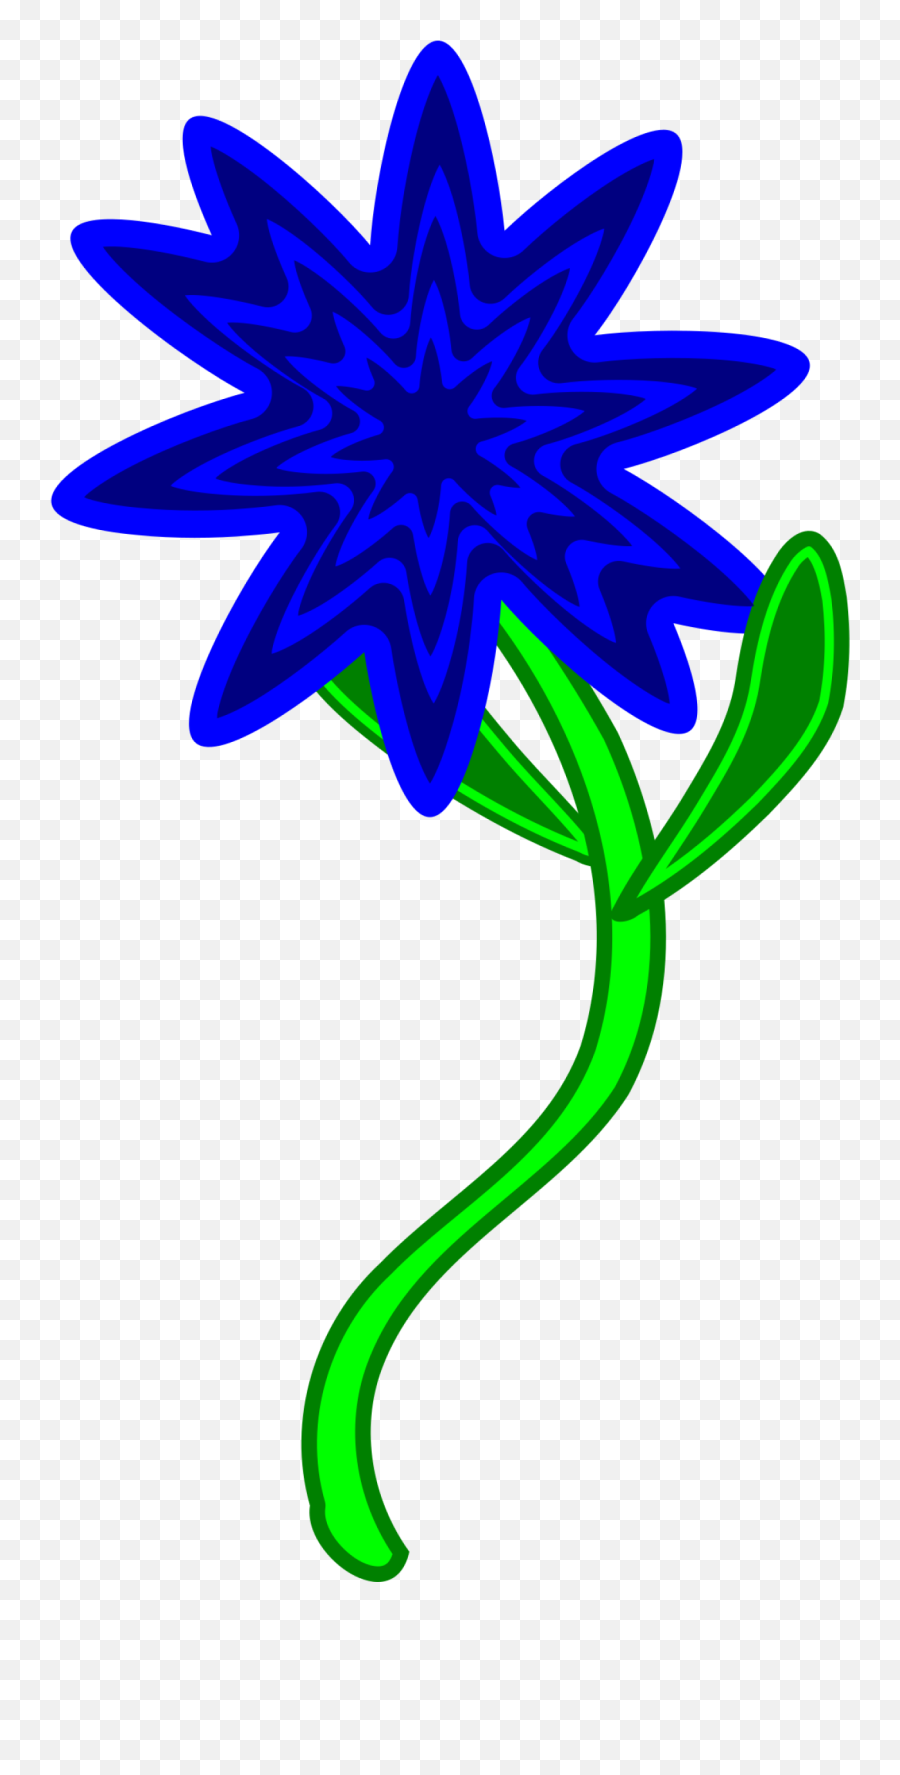 Blue Flower Png Clip Arts For Web - Corte Silhouette Cameo Molde De Flores Para Silhouette,Blue Flower Png